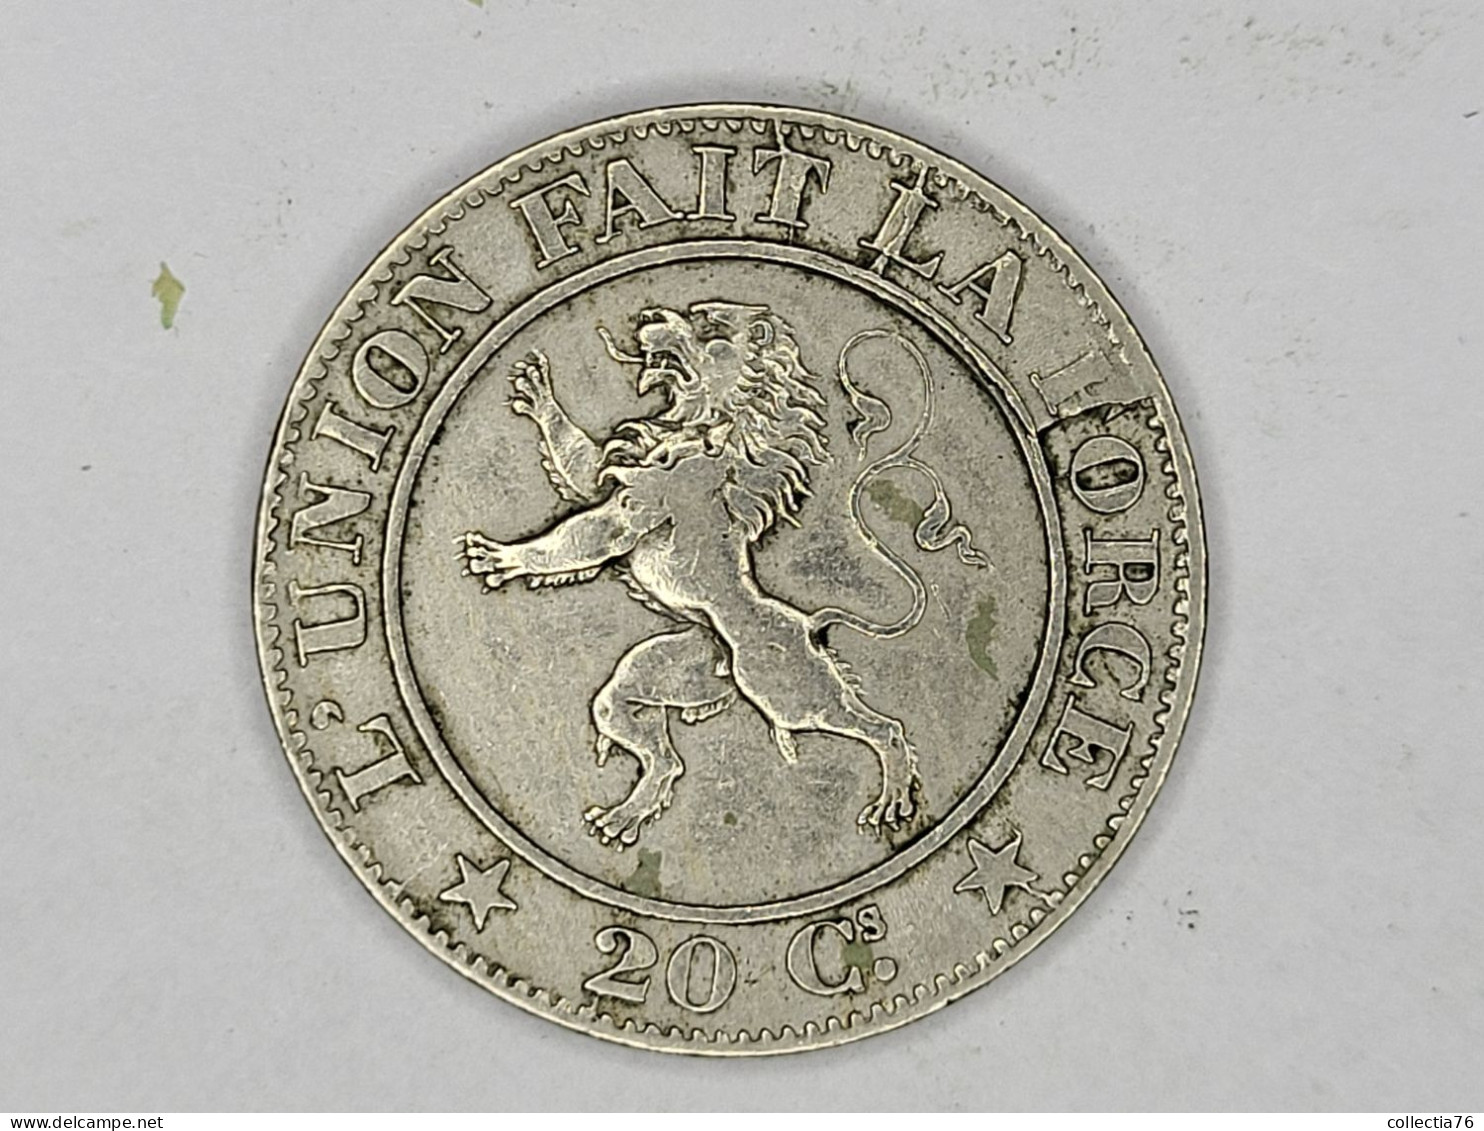 MONNAIE COIN BELGIQUE BELGIE 20 CENTIMES LEOPOLD I 1861 LEGENDE FRANCAISE FAUTE COIN AFFAISSE REVERS - 20 Cents